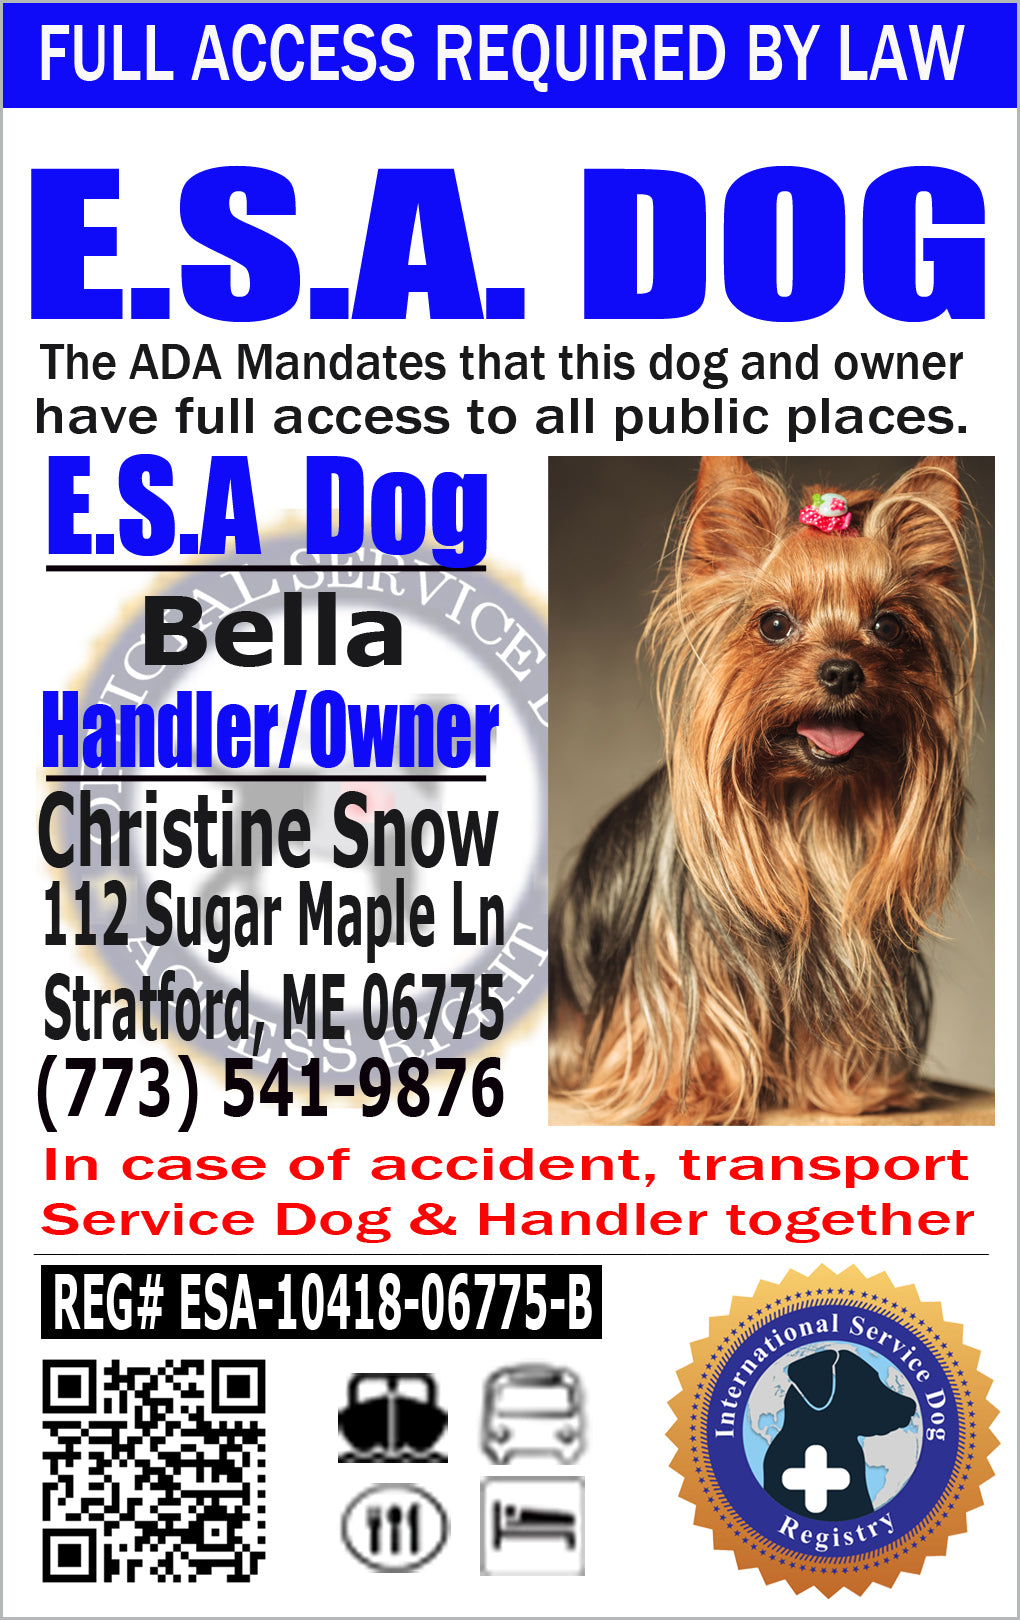 ESA Dog ID Registration